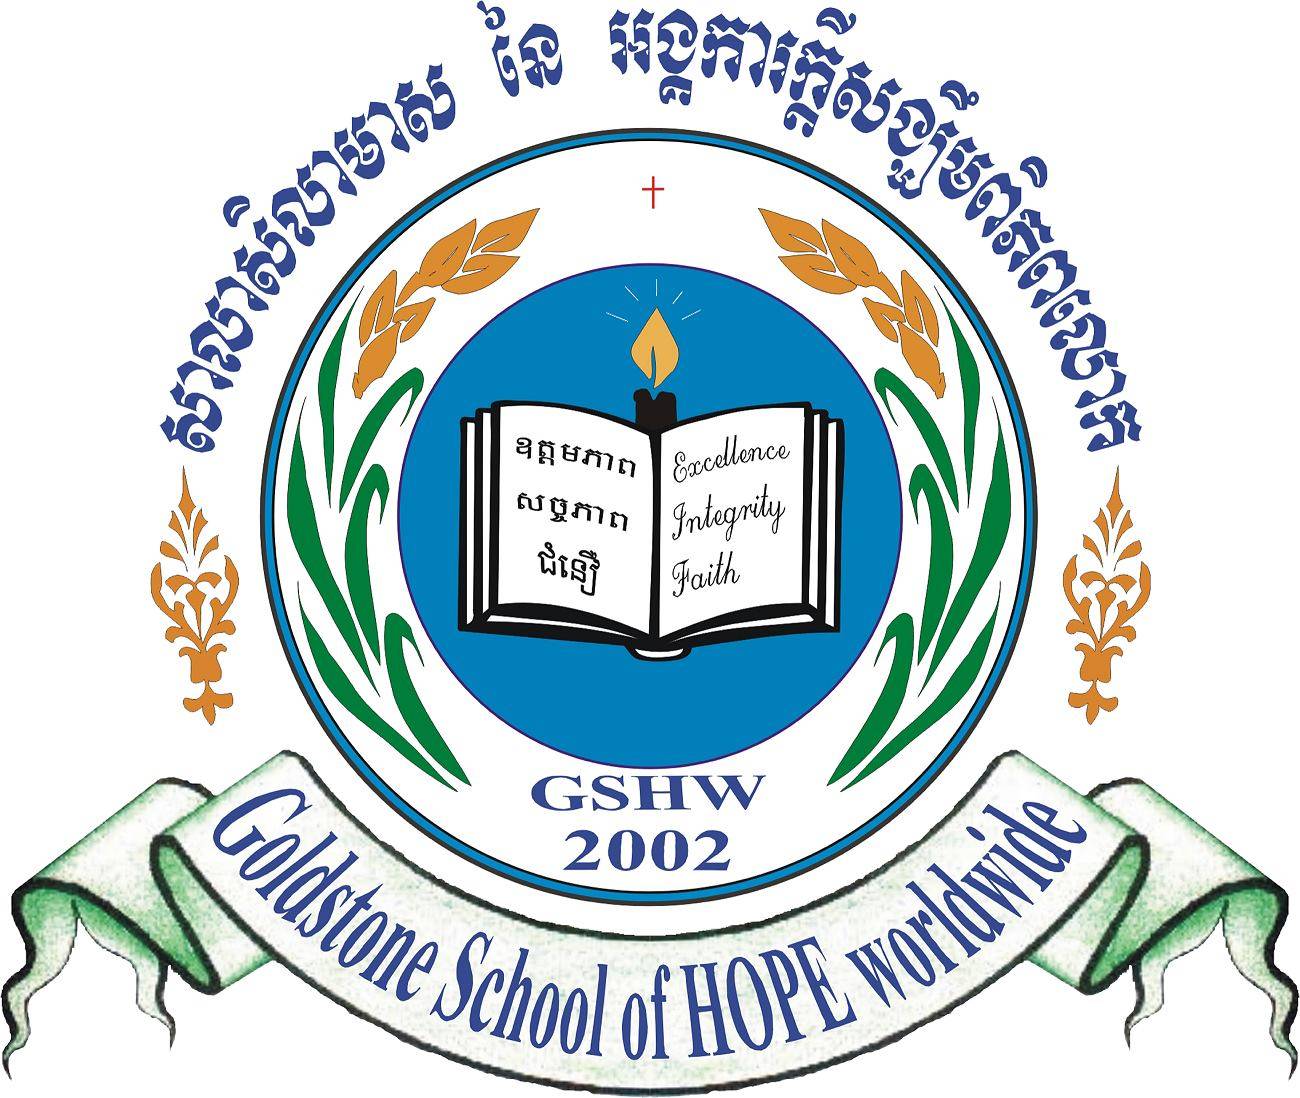 Goldstone School of HOPE